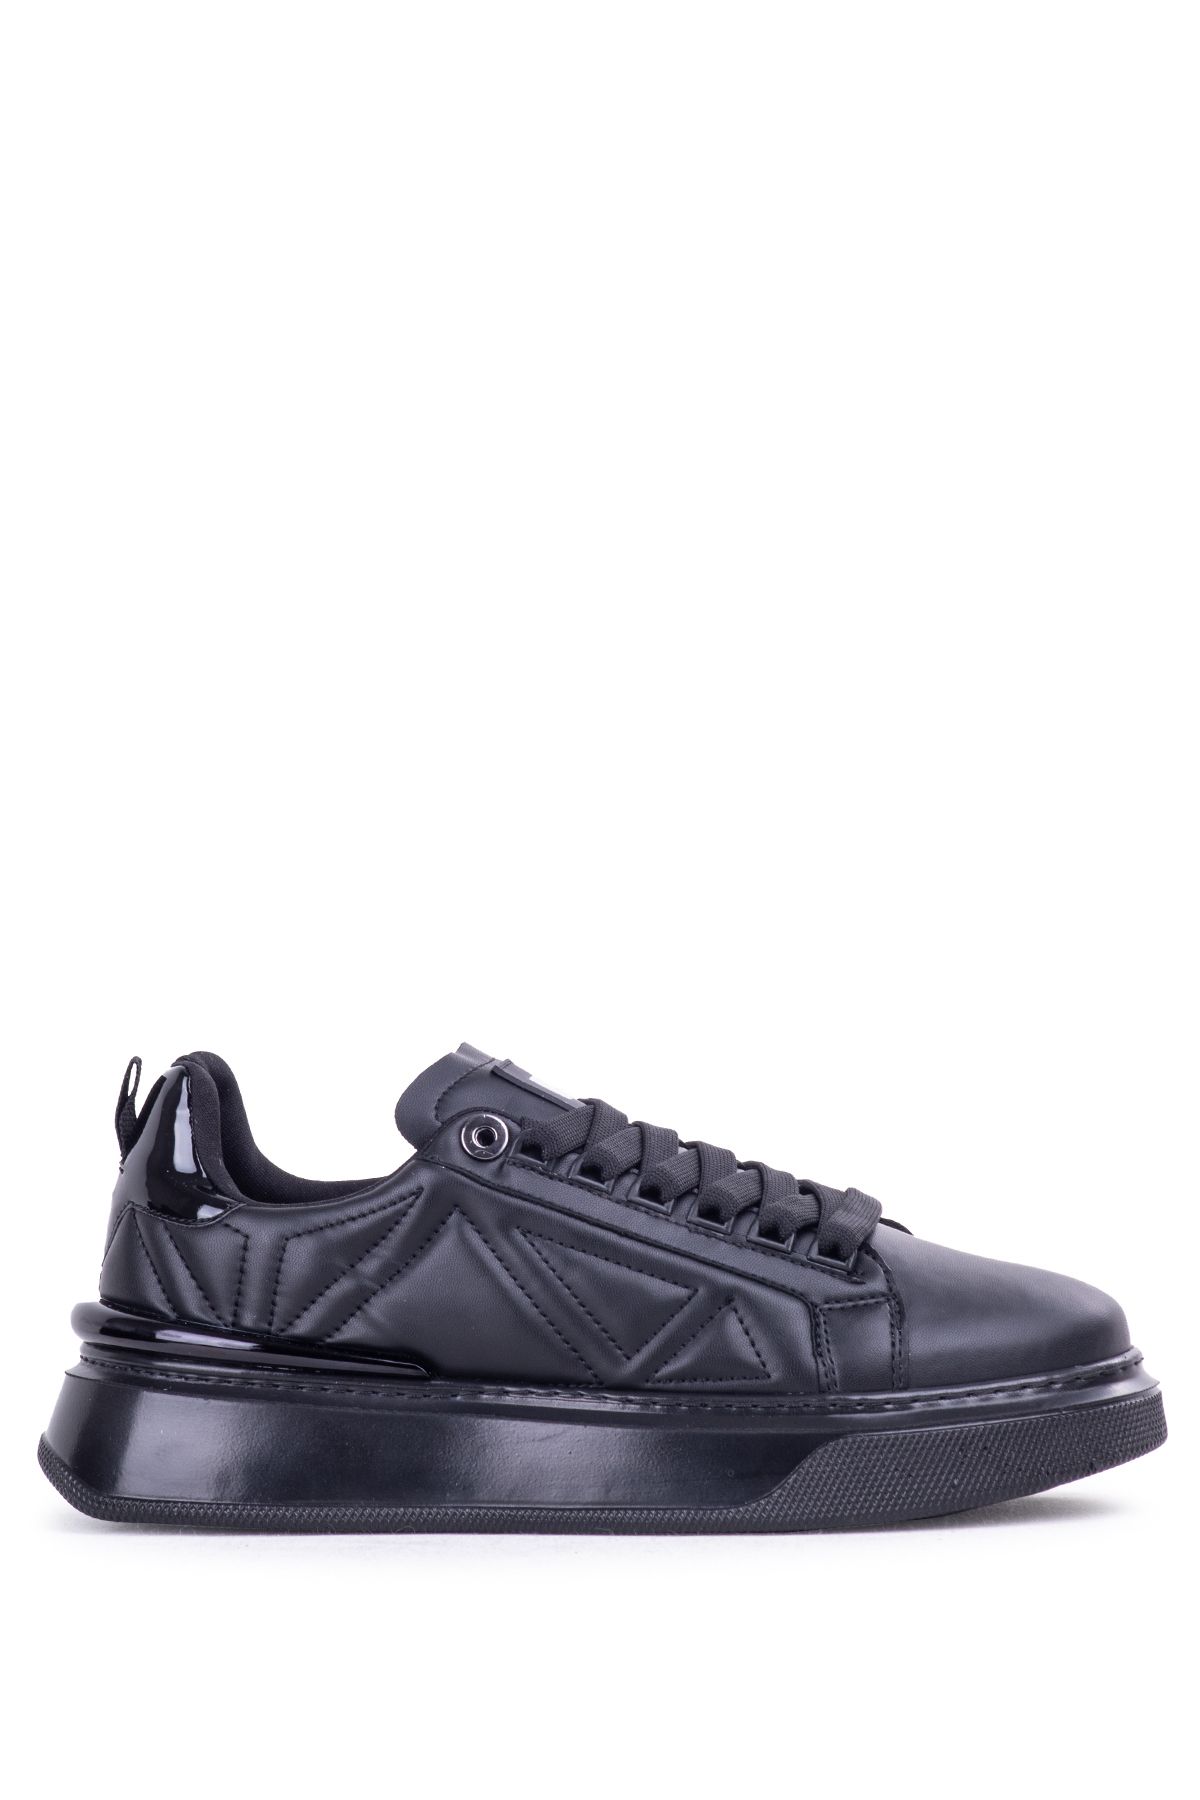 Pierre Cardin 28211 Erkek Yüksek Taban Sneaker Ayakkabı